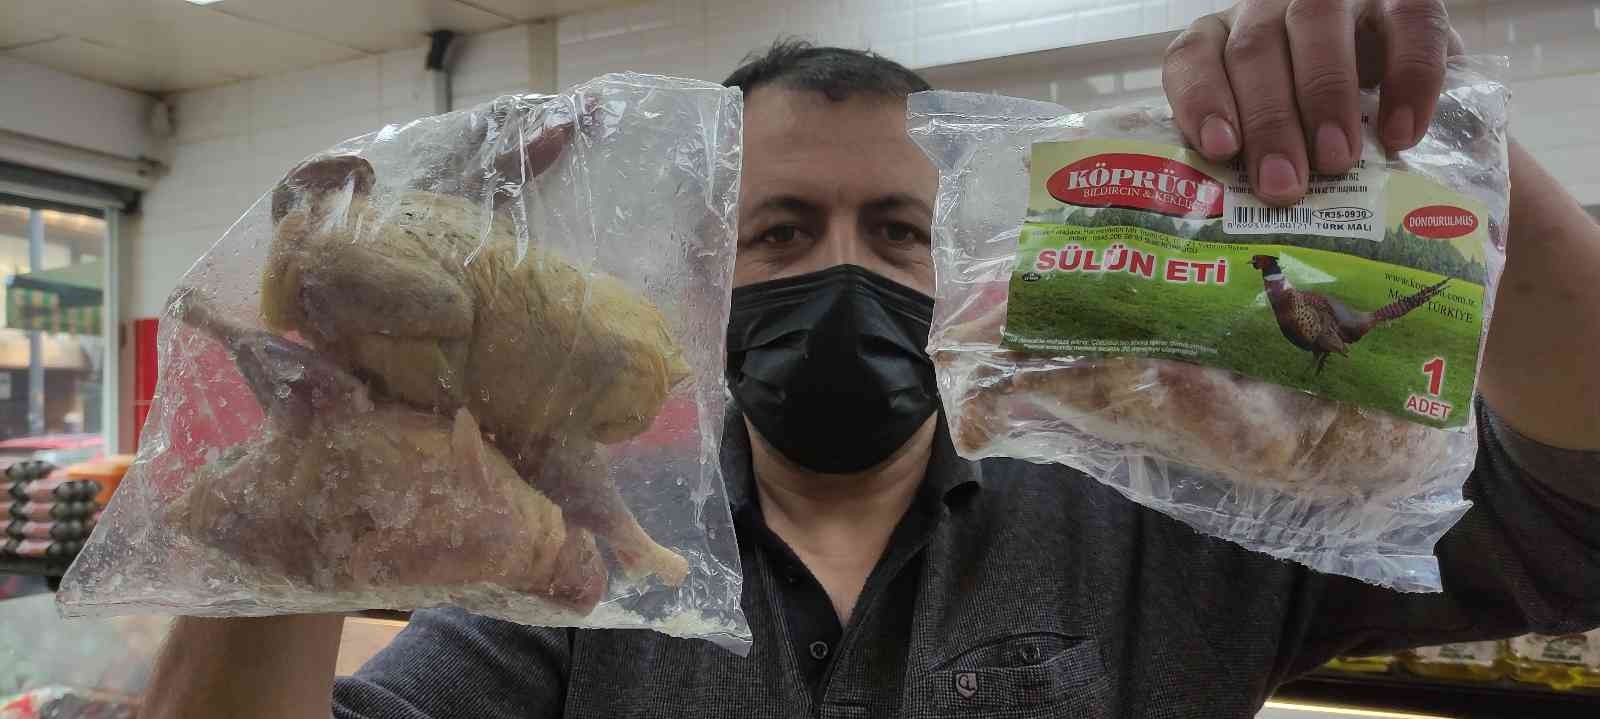 Bursa’da hobi olarak keklik ve sülün yetiştirmeye başlayan kişi şimdi yurt dışına etlerini ihraç ediyor. 10 yıl önce fabrikada çalışırken hobi ...